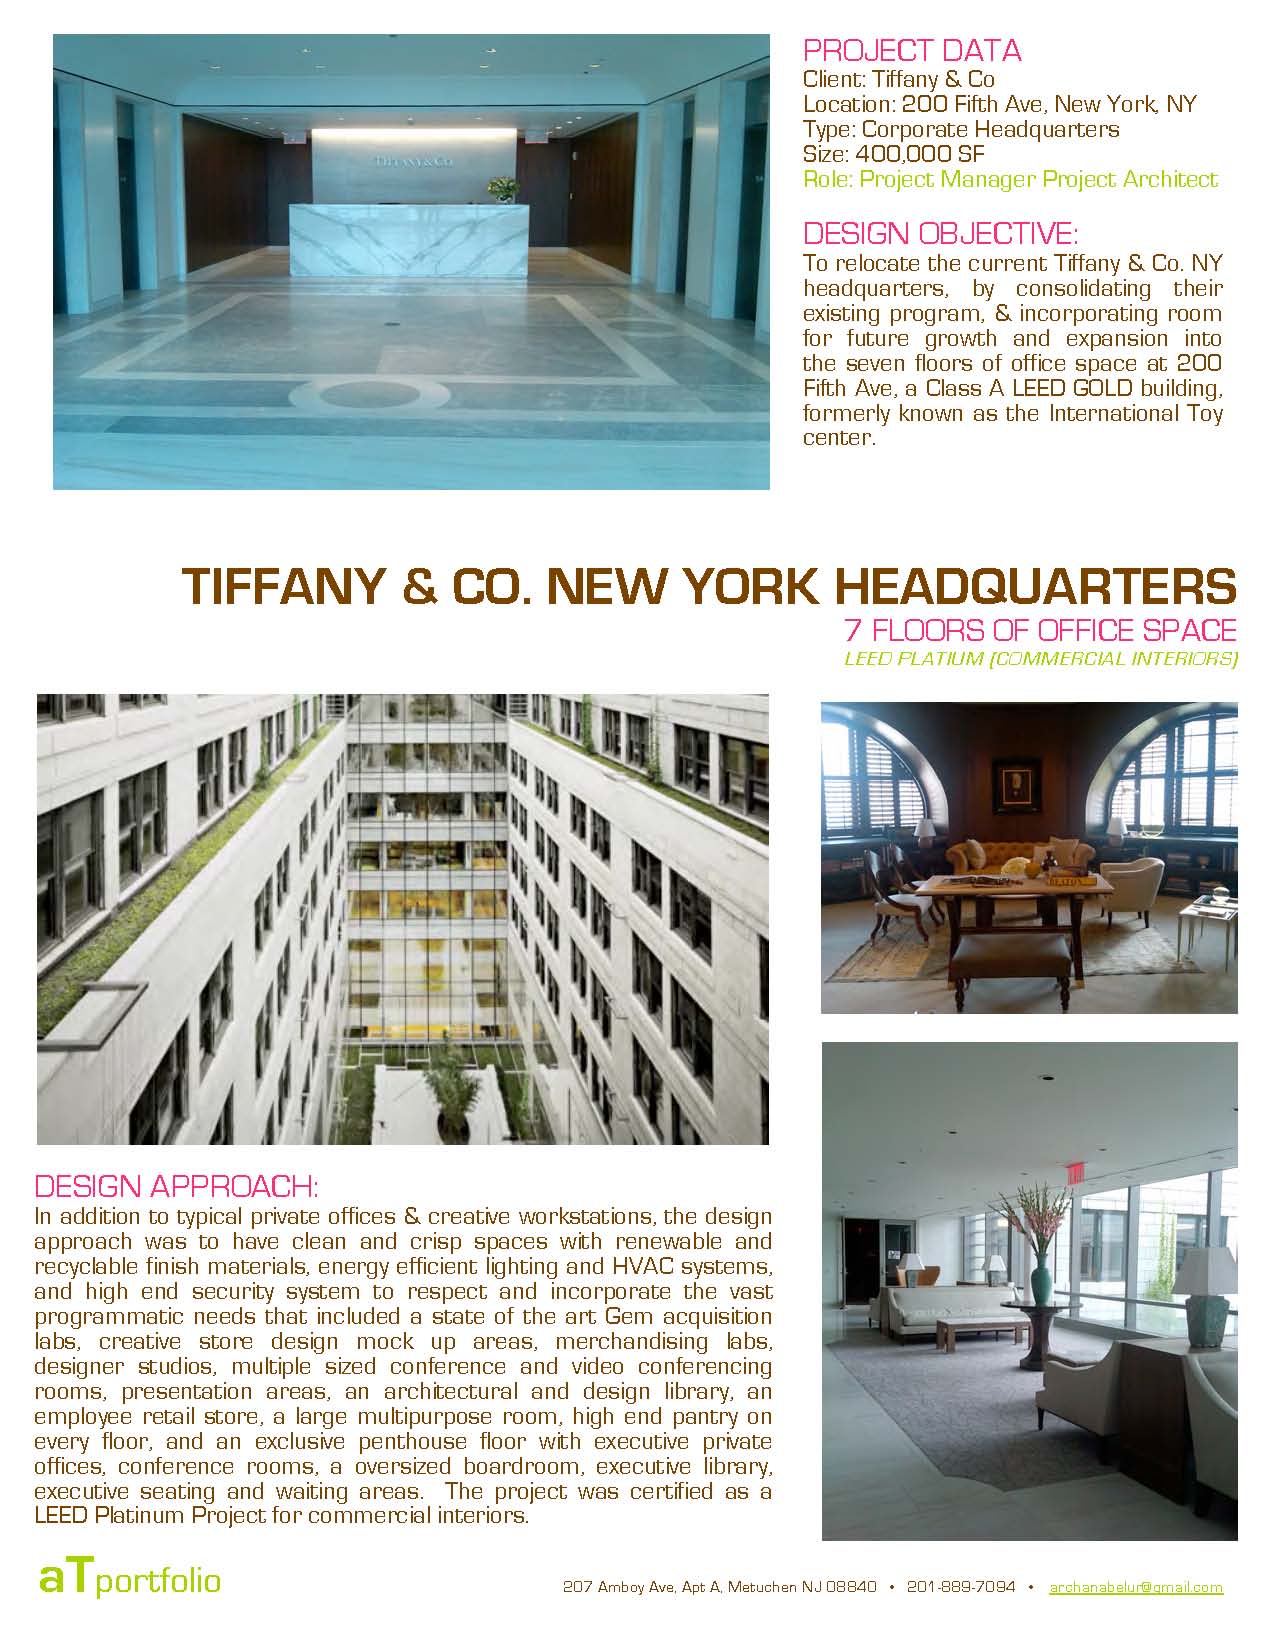 tiffany & co office